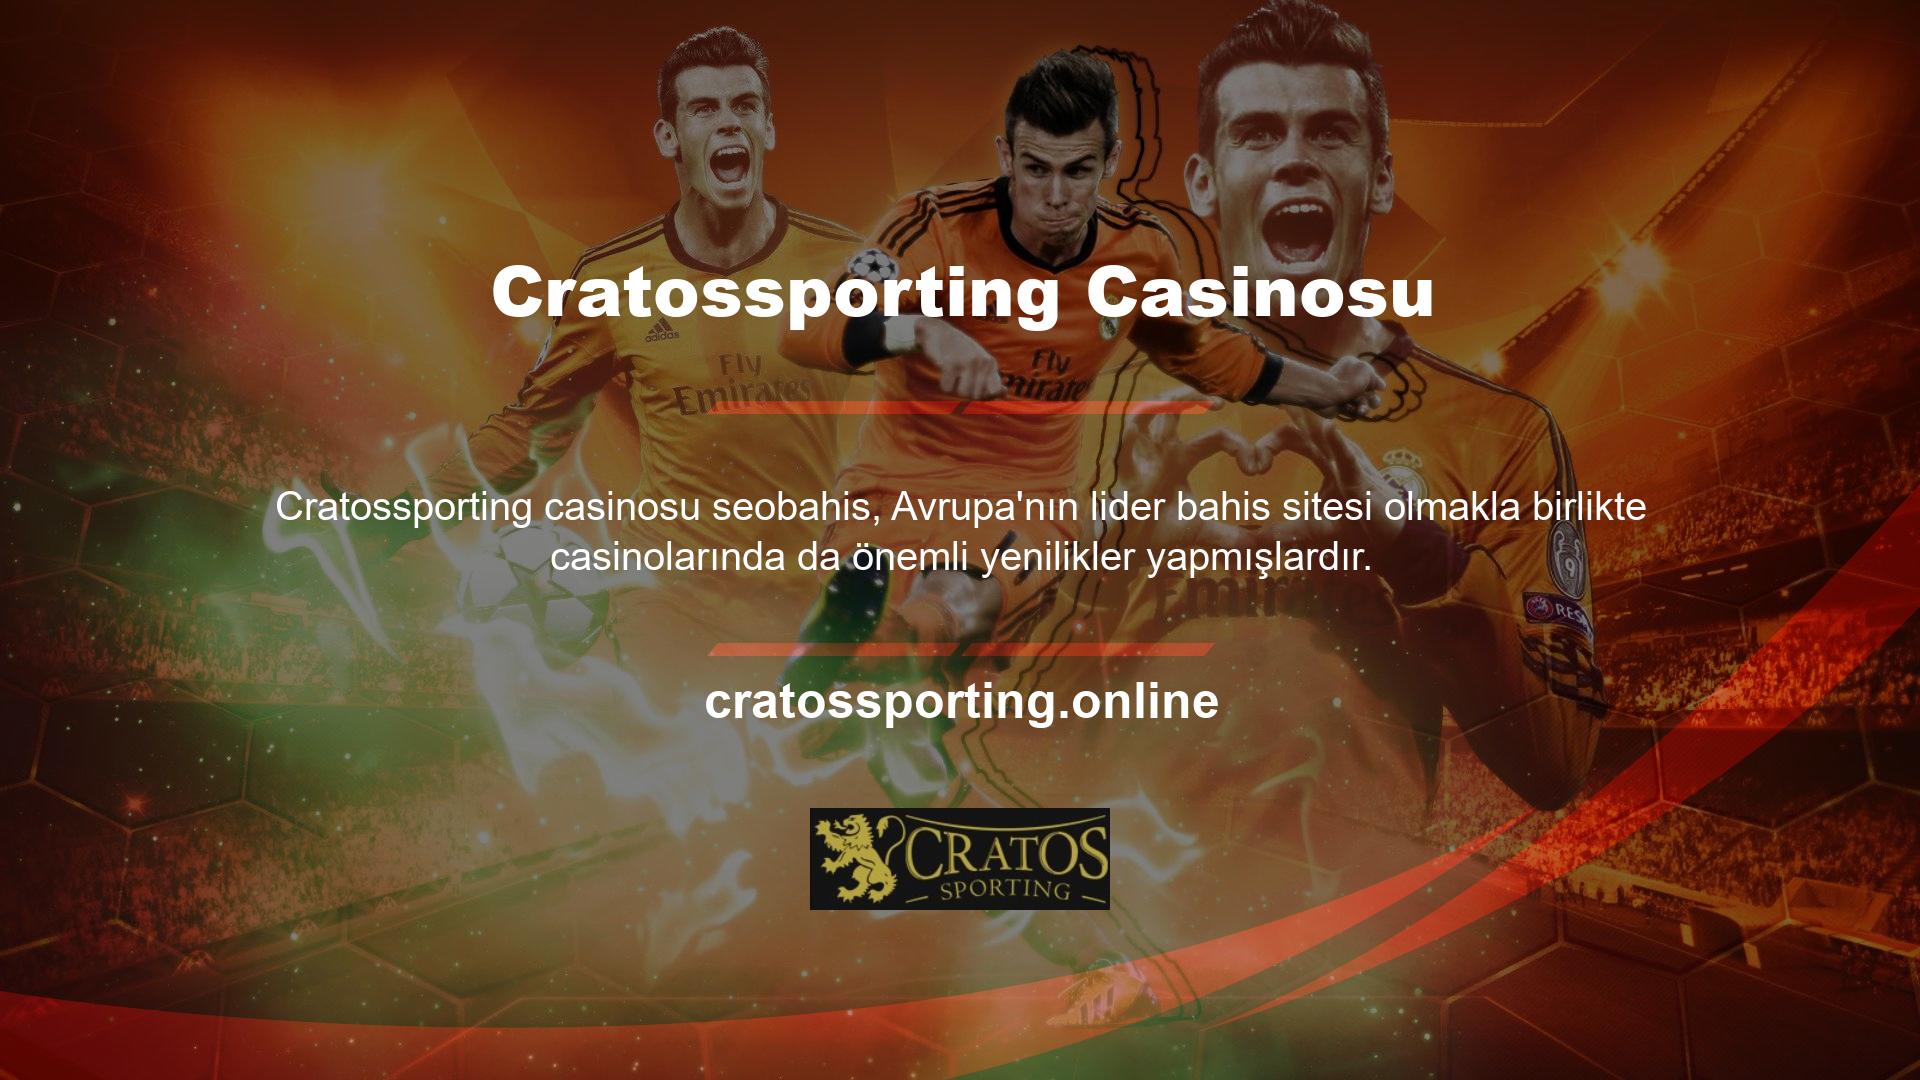 Casino sektörüne göre Türkiye'de casino oyunları giderek daha popüler hale geliyor, ancak Cratossporting öncü olmayı bırakmadı